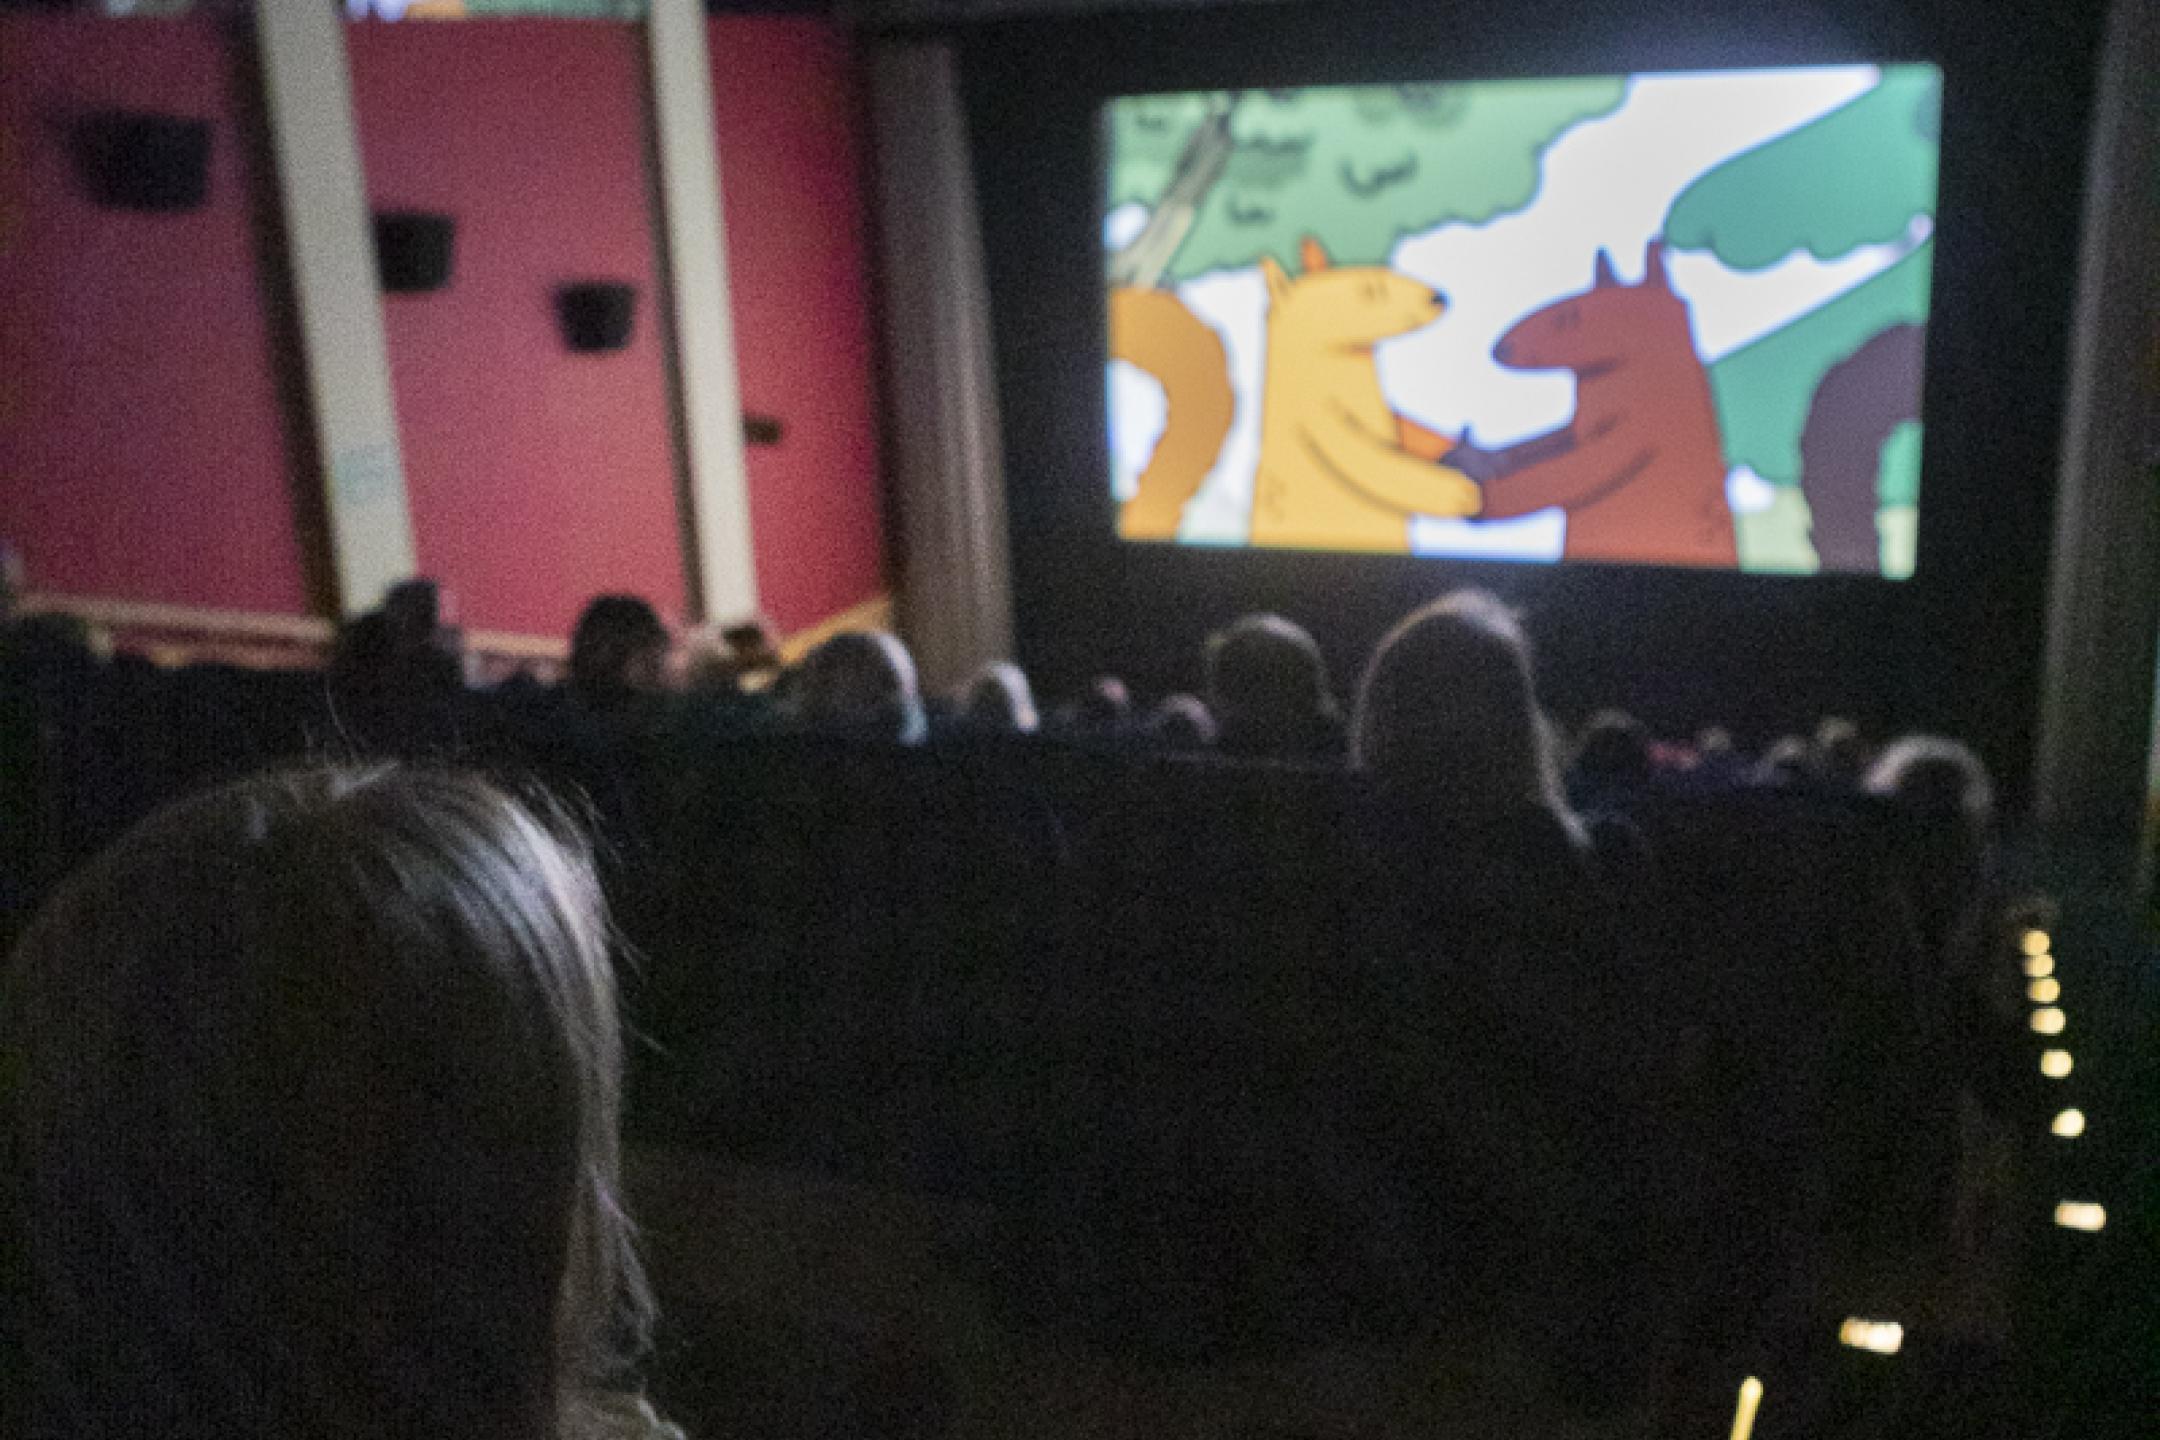 Eine Kinovorstellung für Kinder: Auf der Leinwand zwei fassen sich zwei Eichhörnchen als Zeichentrickfiguren an den Händen. 